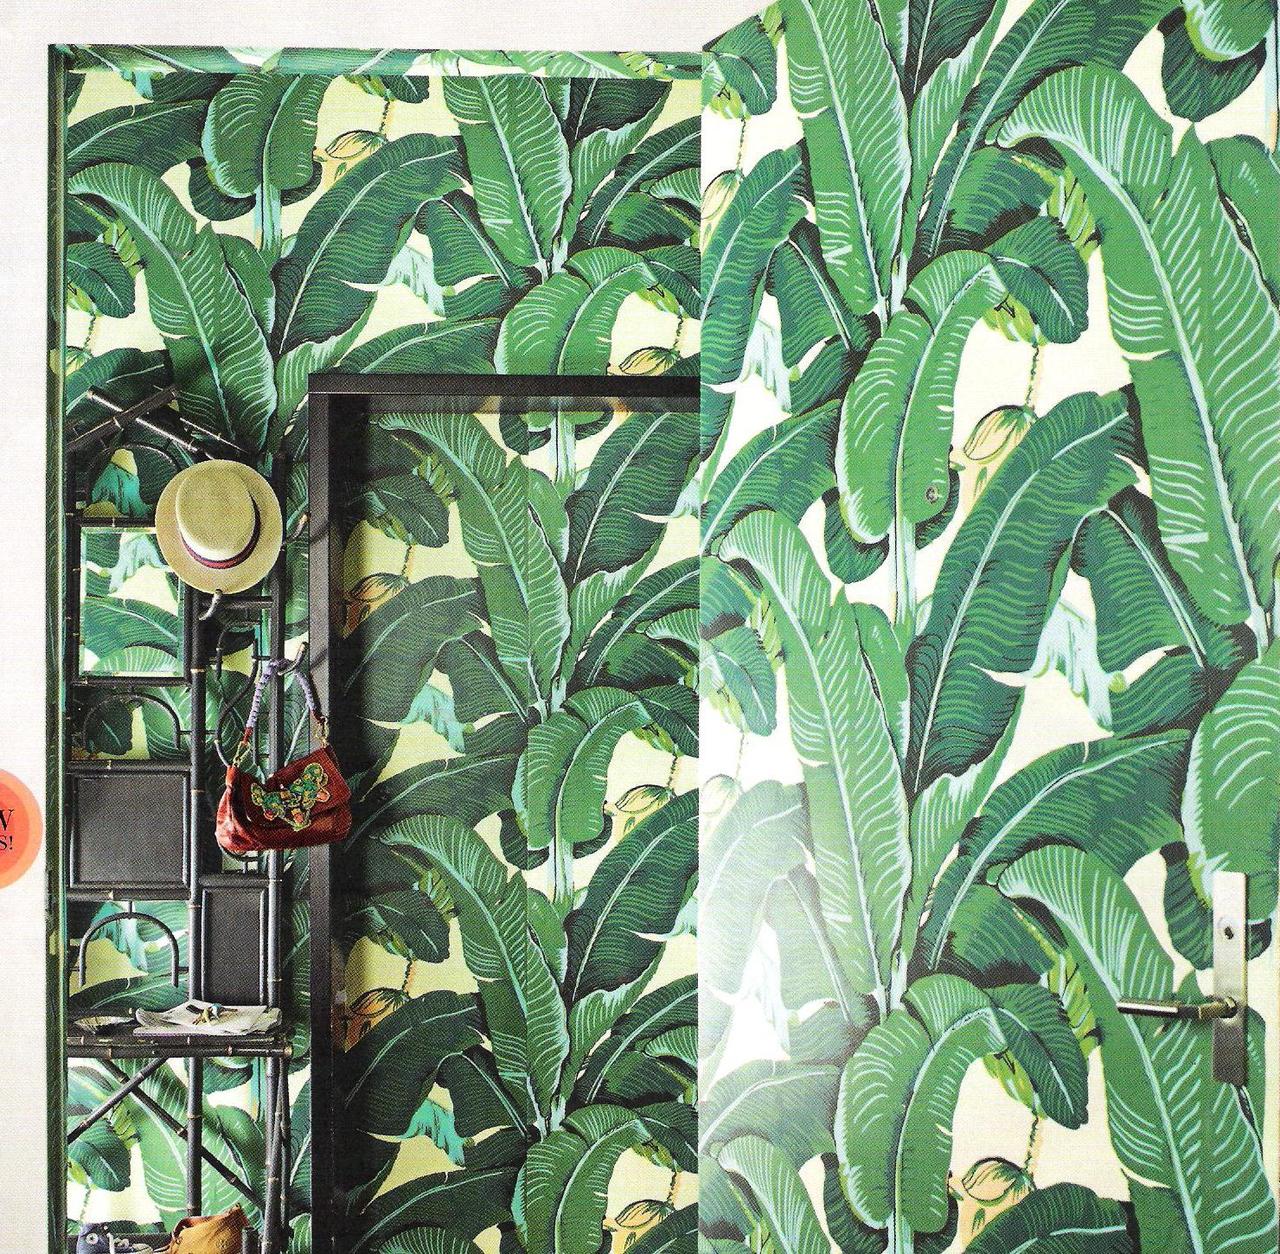  de jungle met het Martinique Banana Leaf wallpaper van Hinson   Roomed